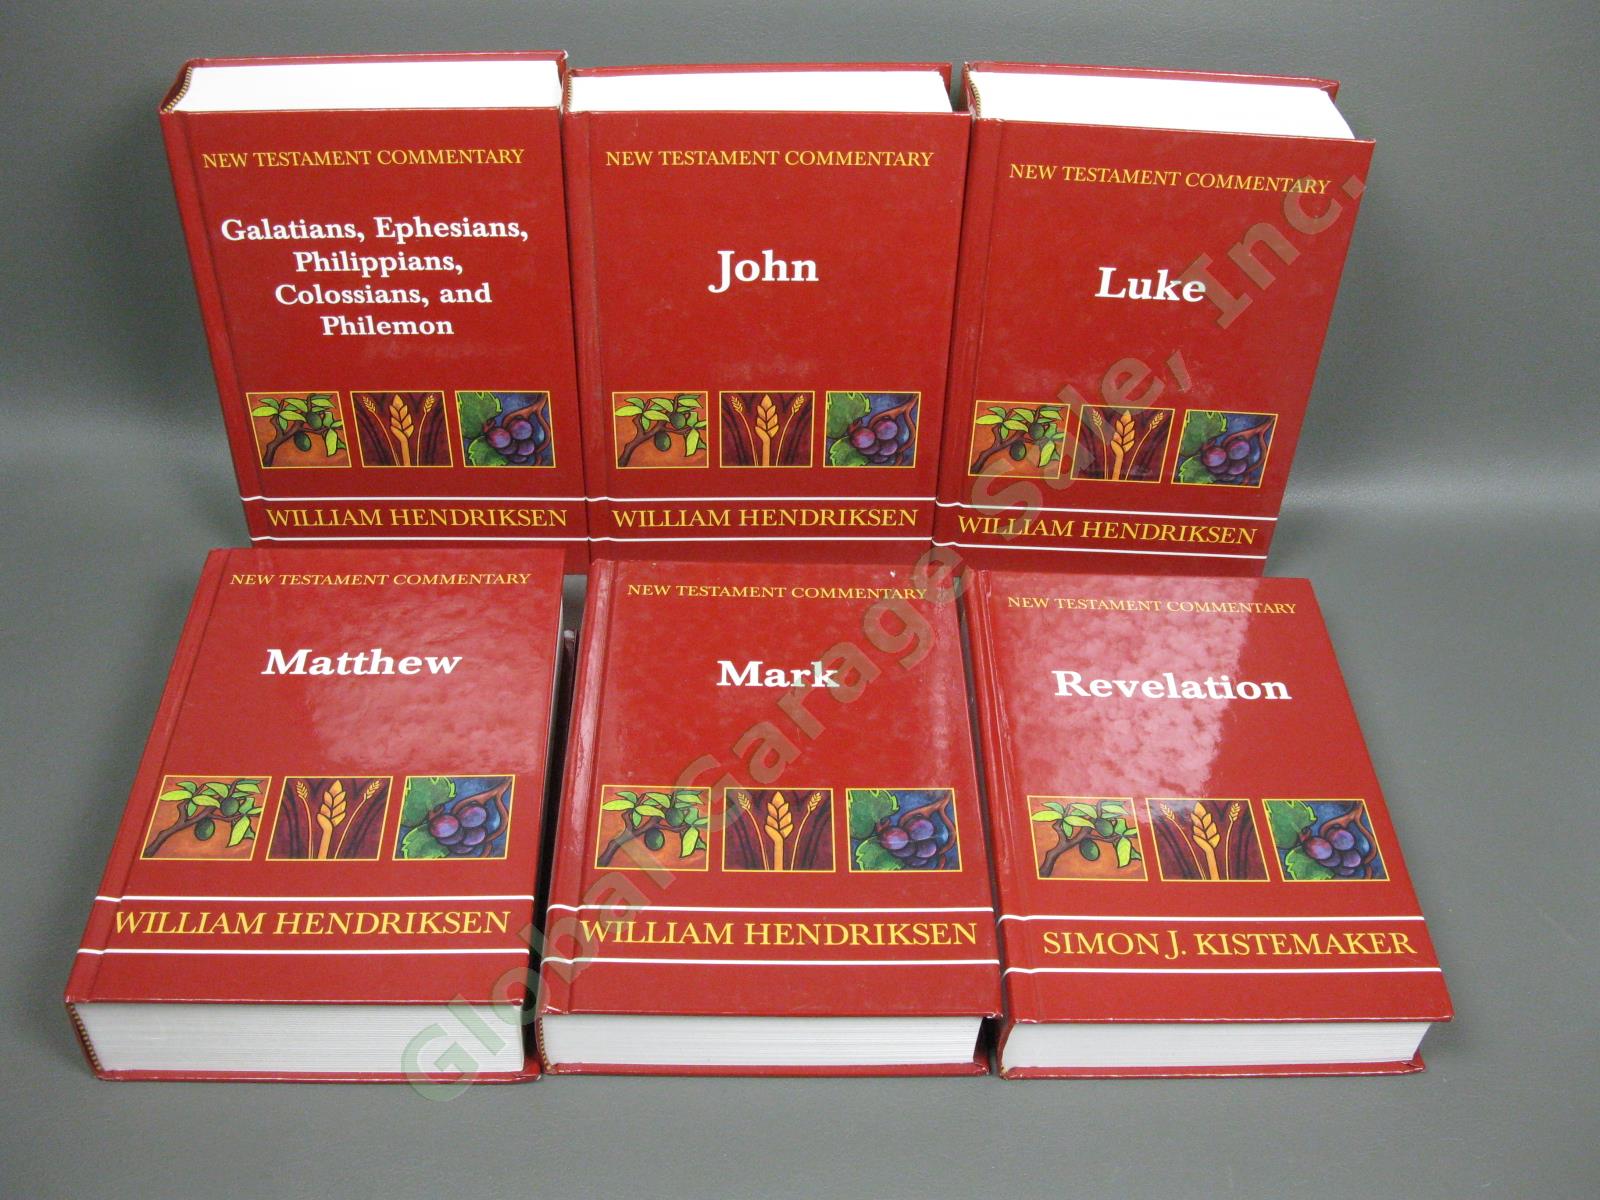 11 New Testament Commentary Books Set 2004 William Hendricksen Simon Kistemaker 4